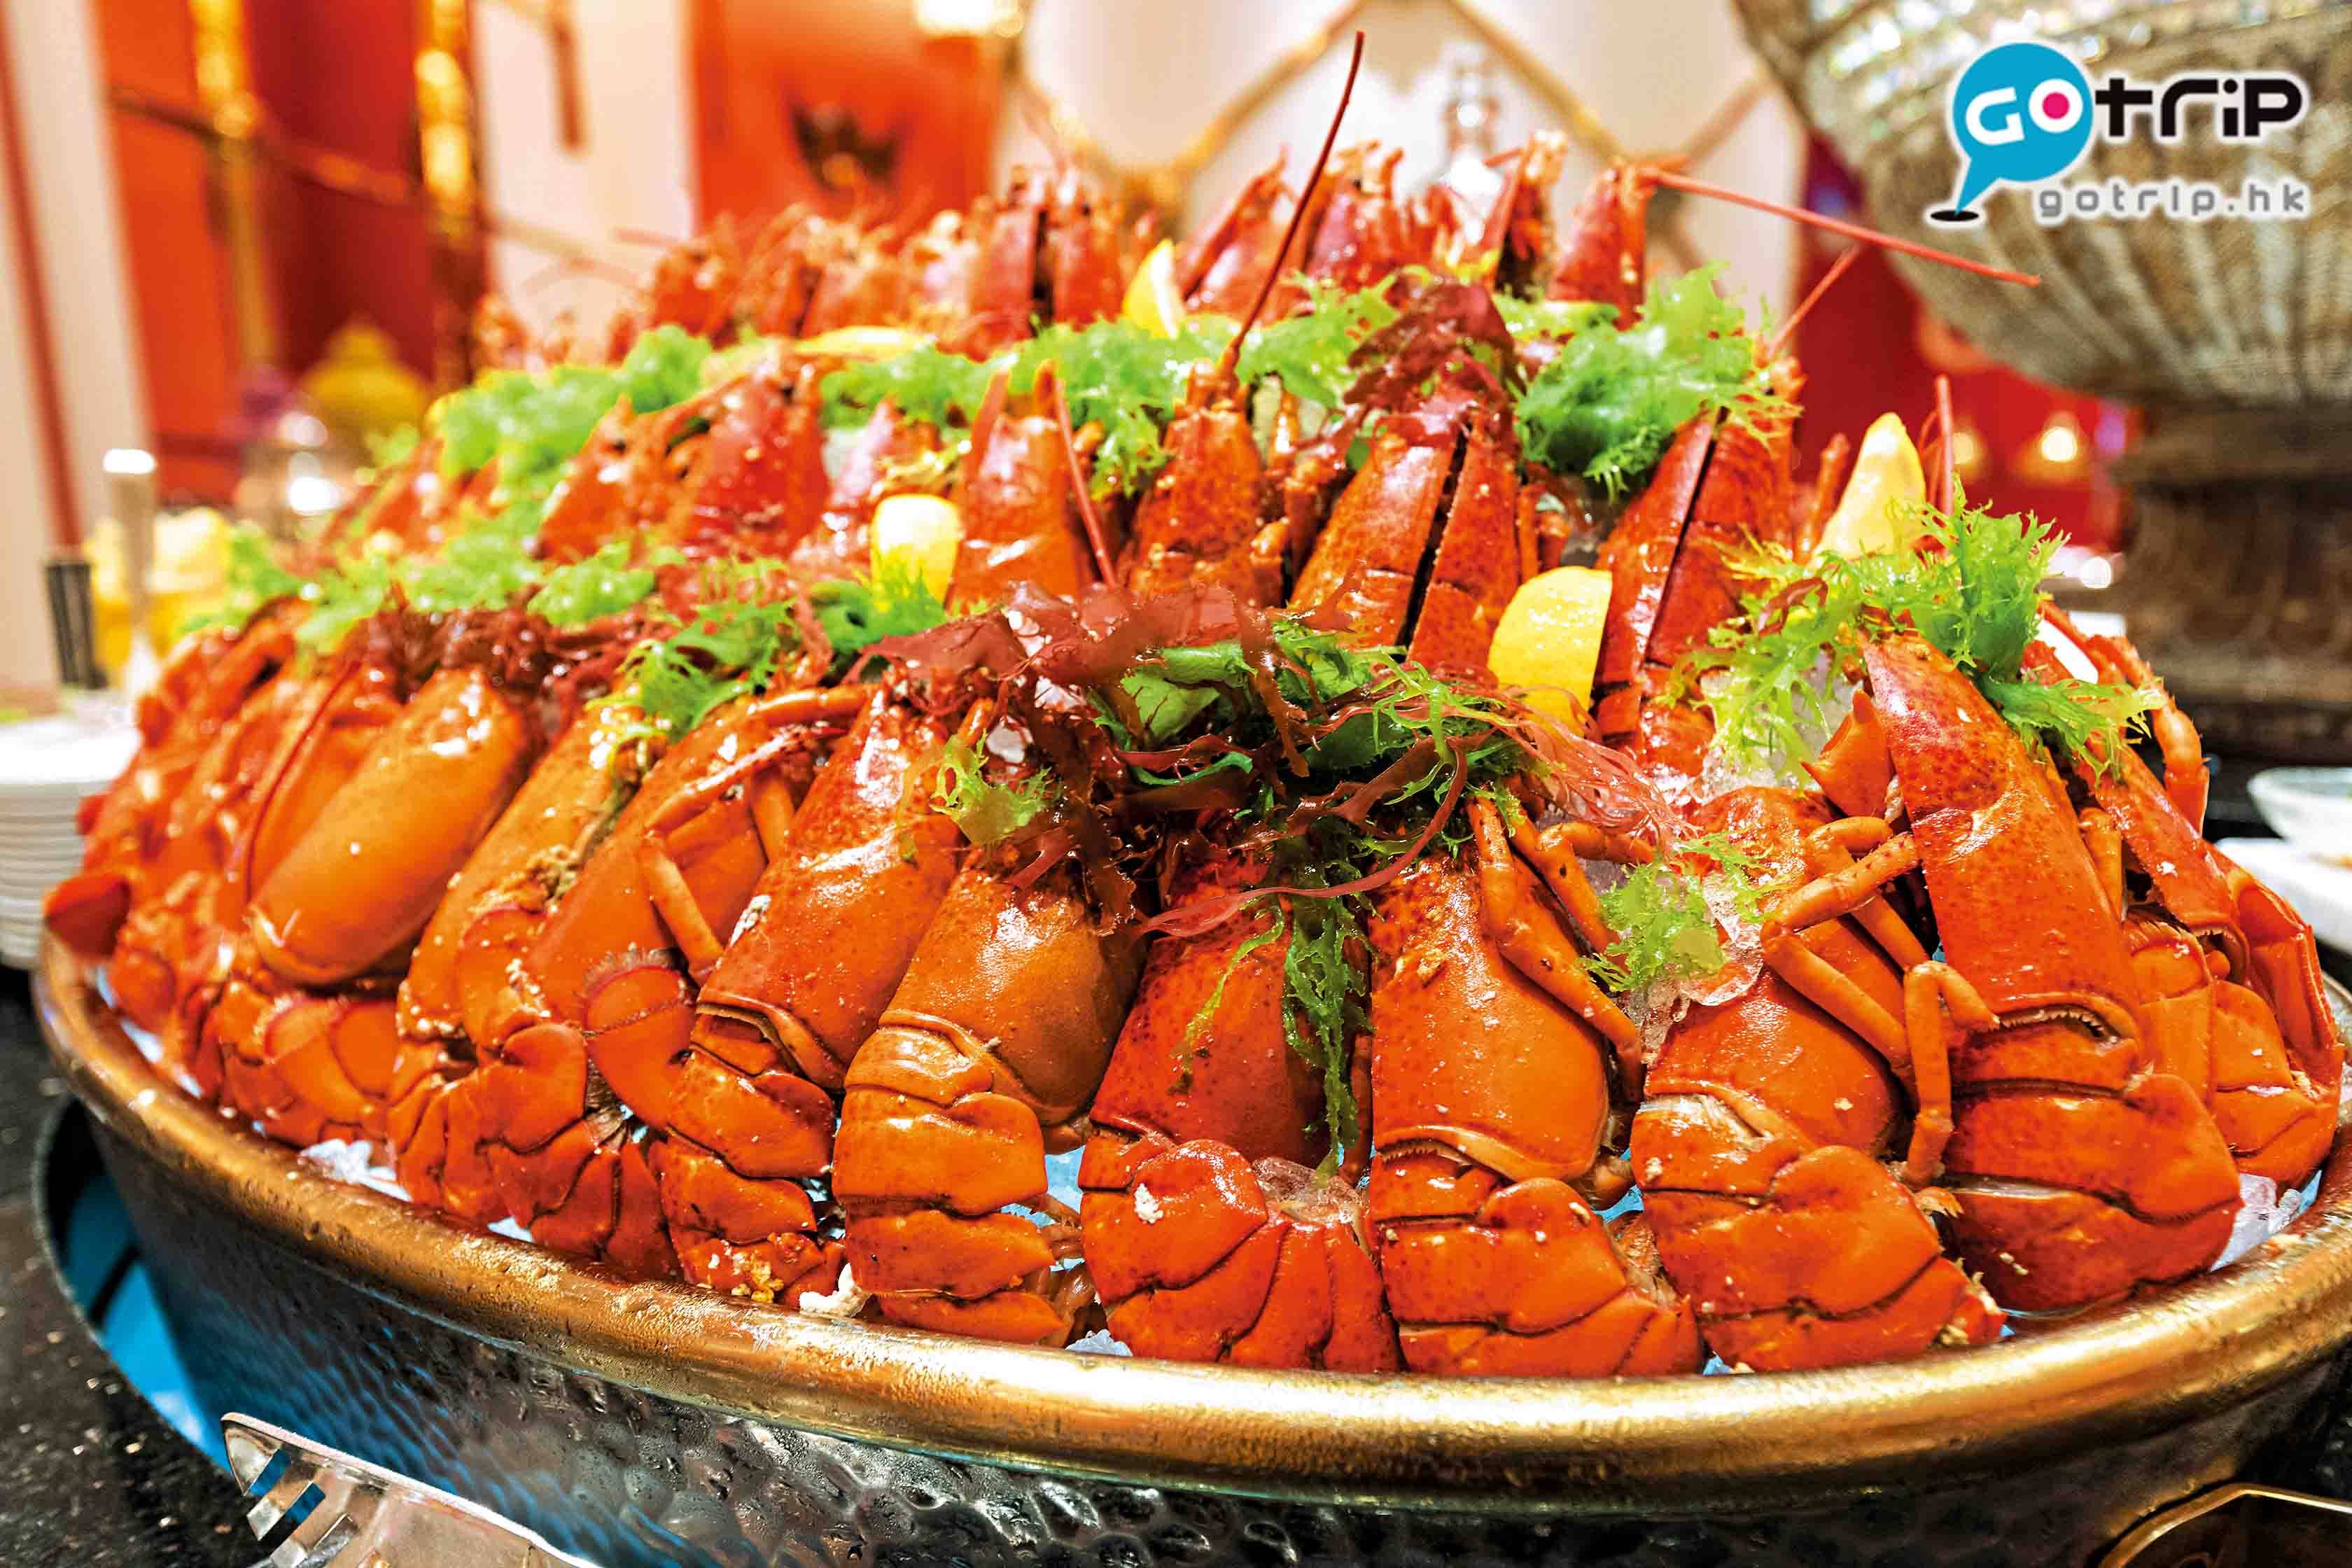 澳門自助餐2019 場內的海鮮有生蠔、龍蝦、長腳蟹和熟蝦。